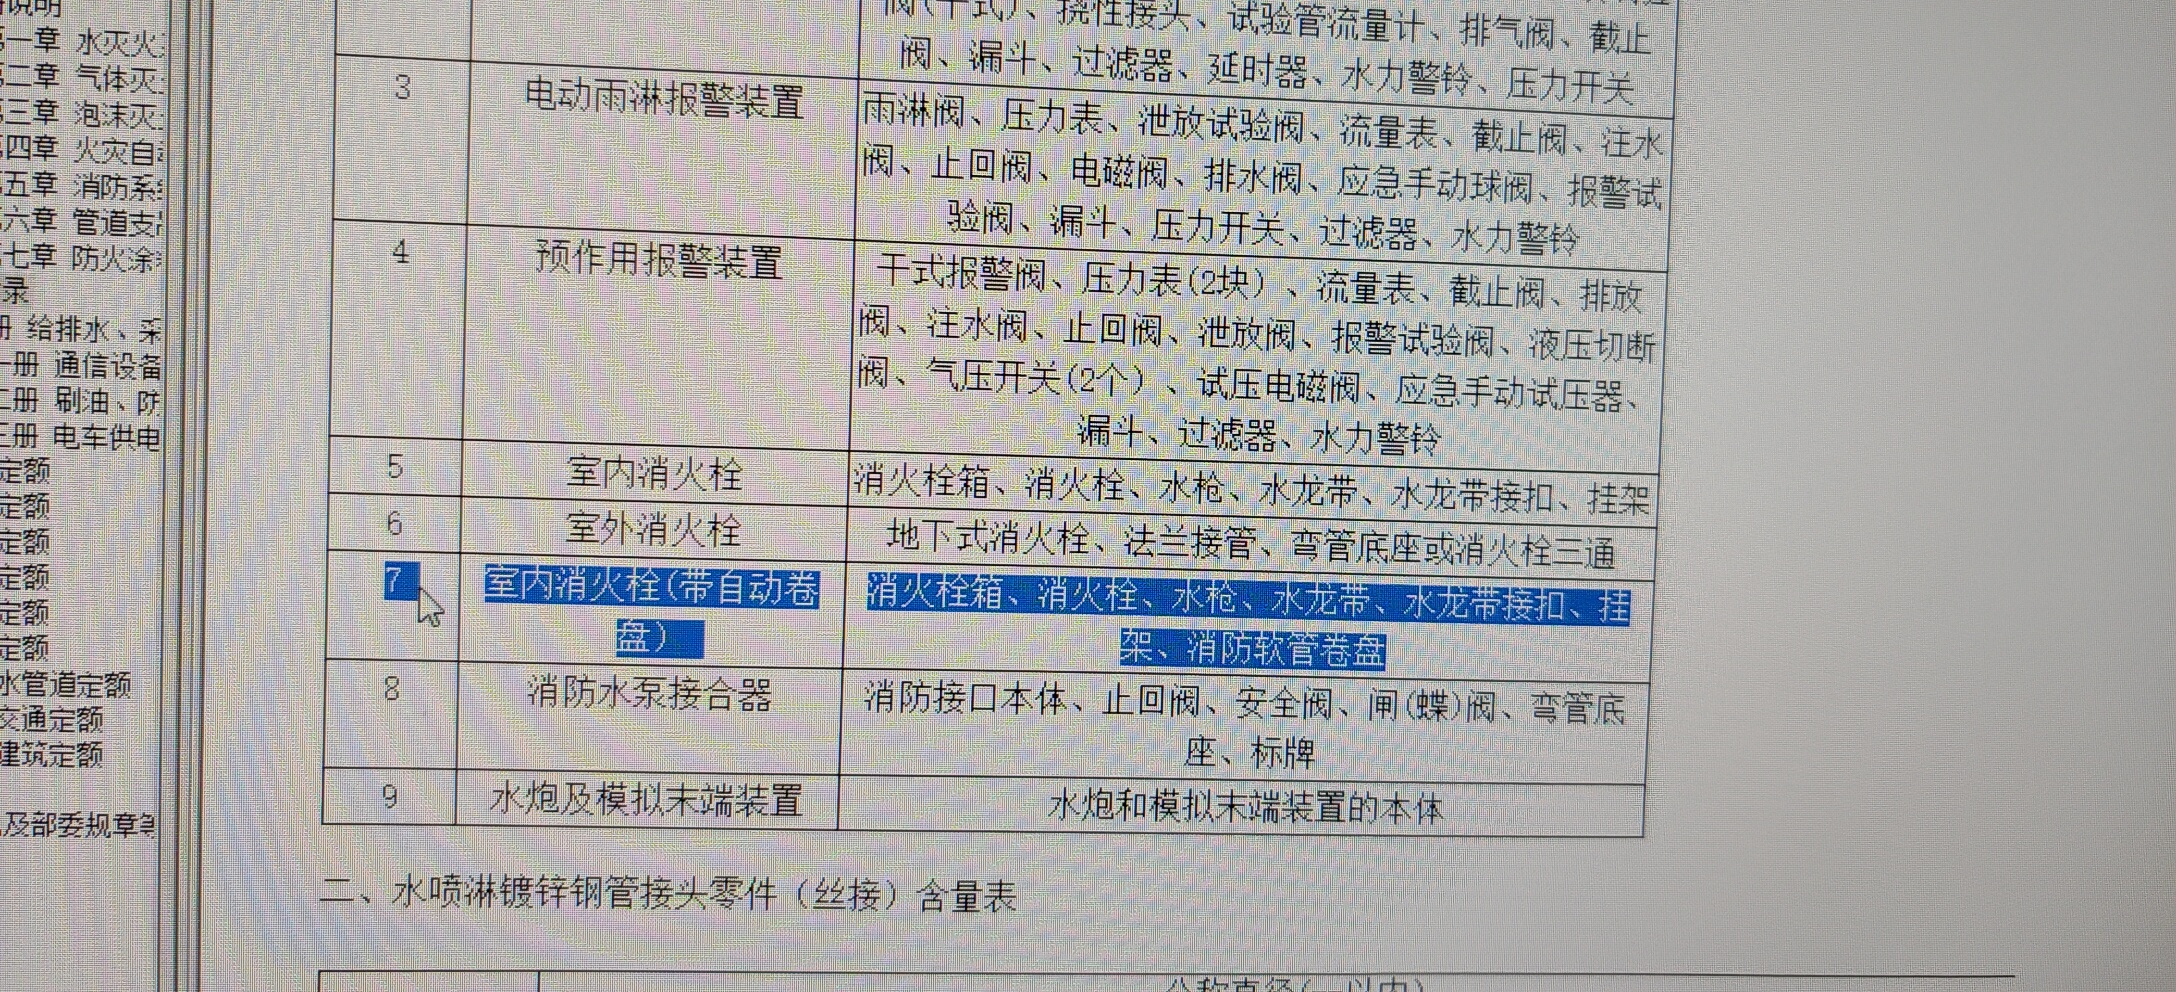 老师，上海市定额规范中室内消火栓没带消火栓报警按钮，但是设计说明中有要求要设置这个我再算量时要单独列出来吗？另外系统图上直接量取连接消火栓的立管长度准确吗？